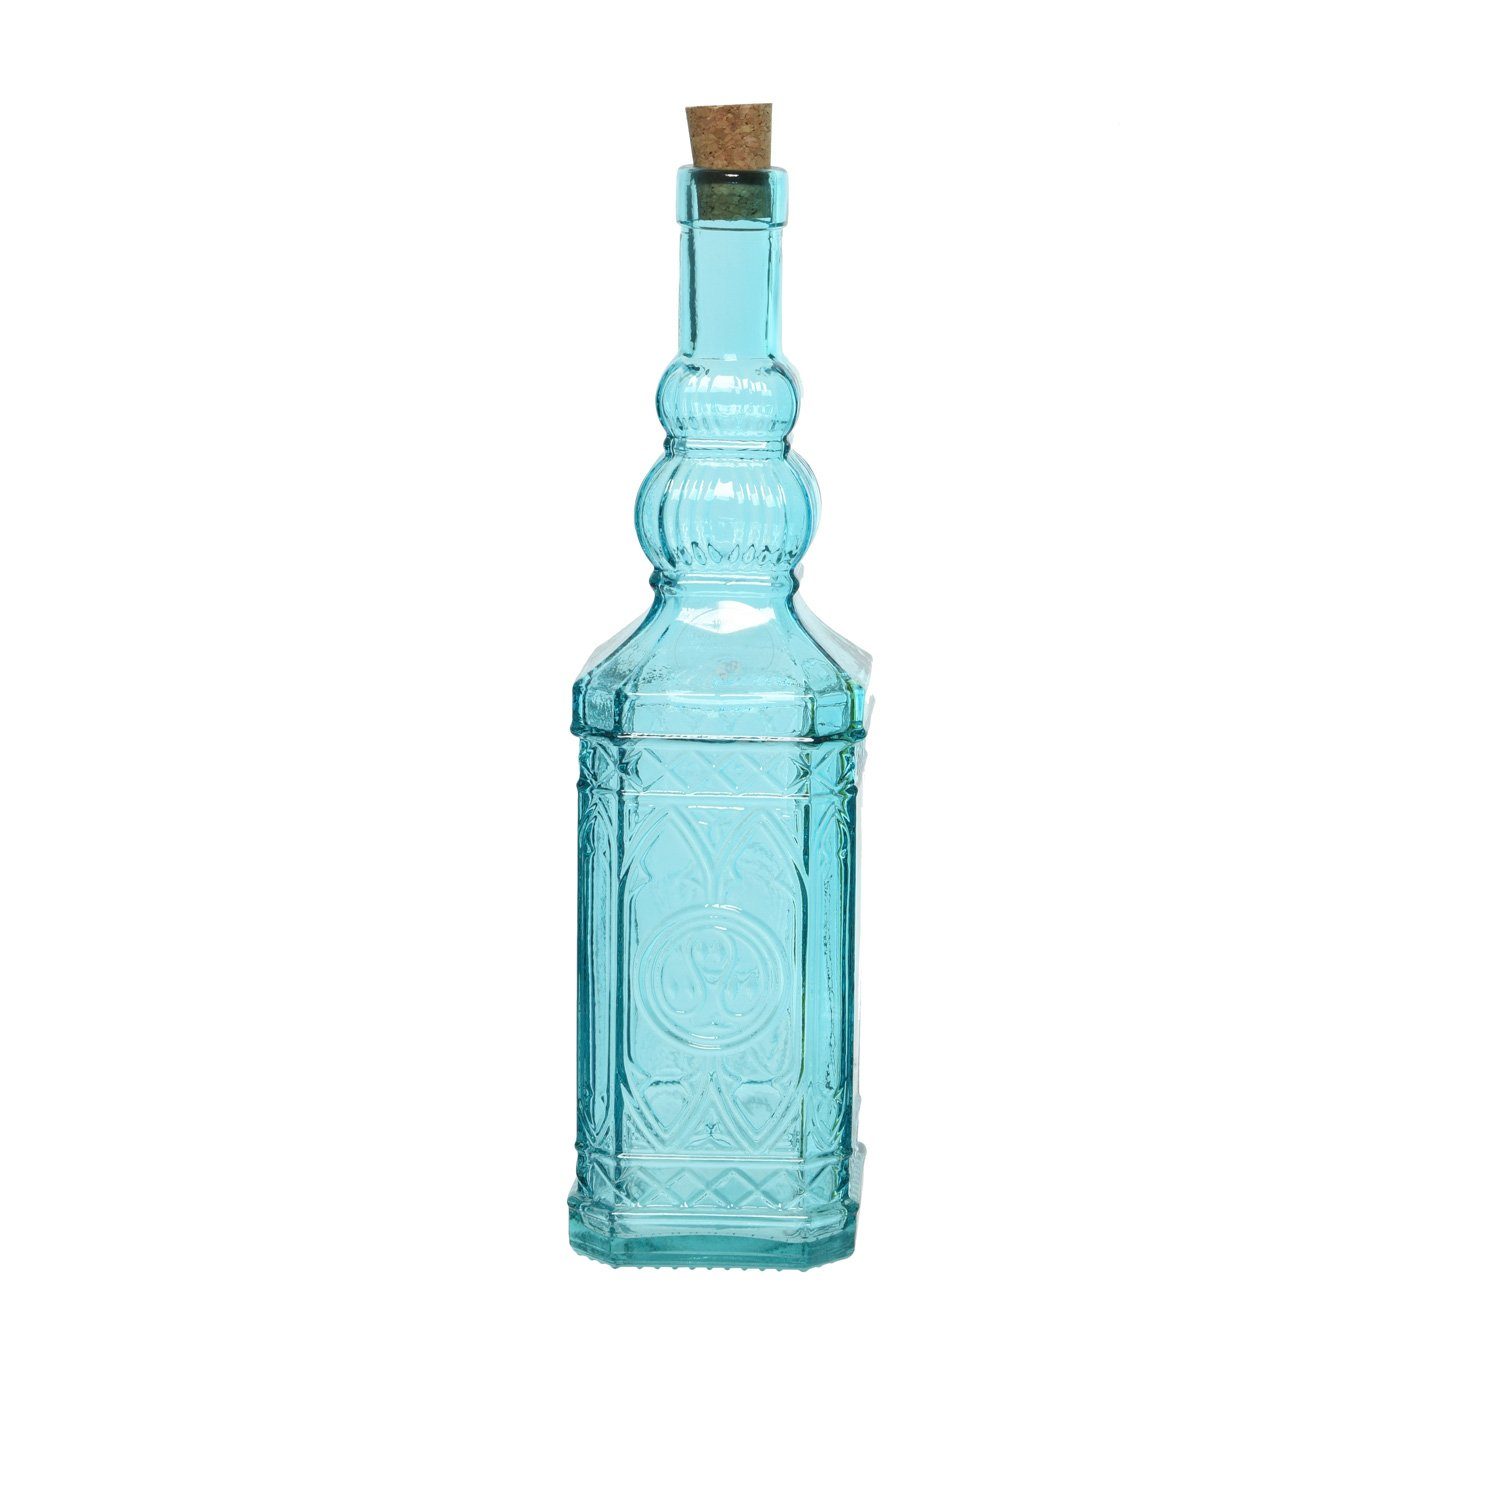 (1-tlg) Glasflasche Recyclingglas, Deko Vintage m. Likör Flasche Retro Glas, MARELIDA Vorratsglas Korken